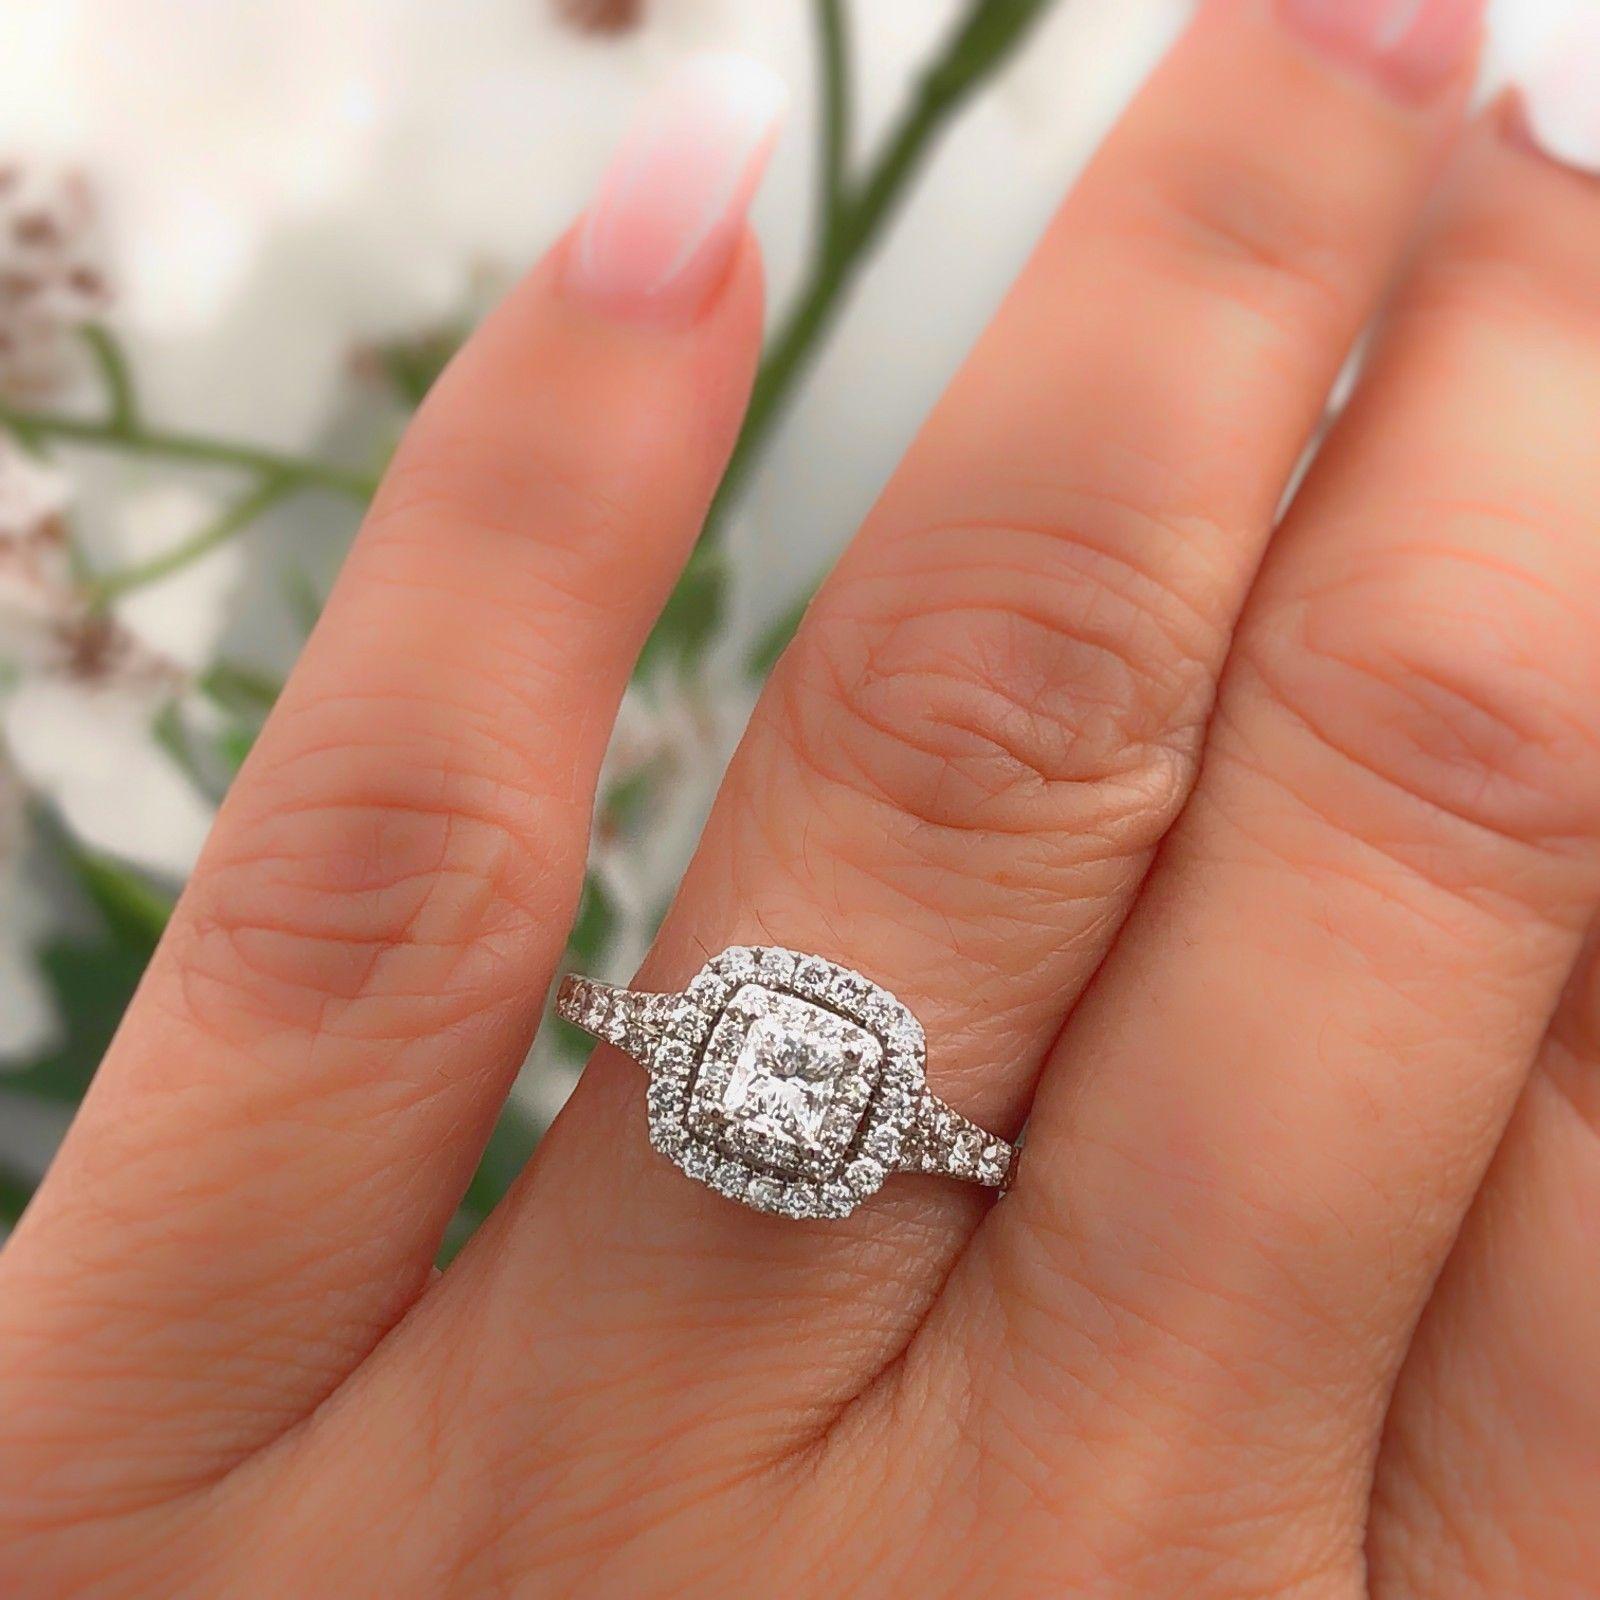 Neil Lane Princess Cut Diamond Engagement Ring 1.00 Carat 14 Karat White Gold For Sale 6